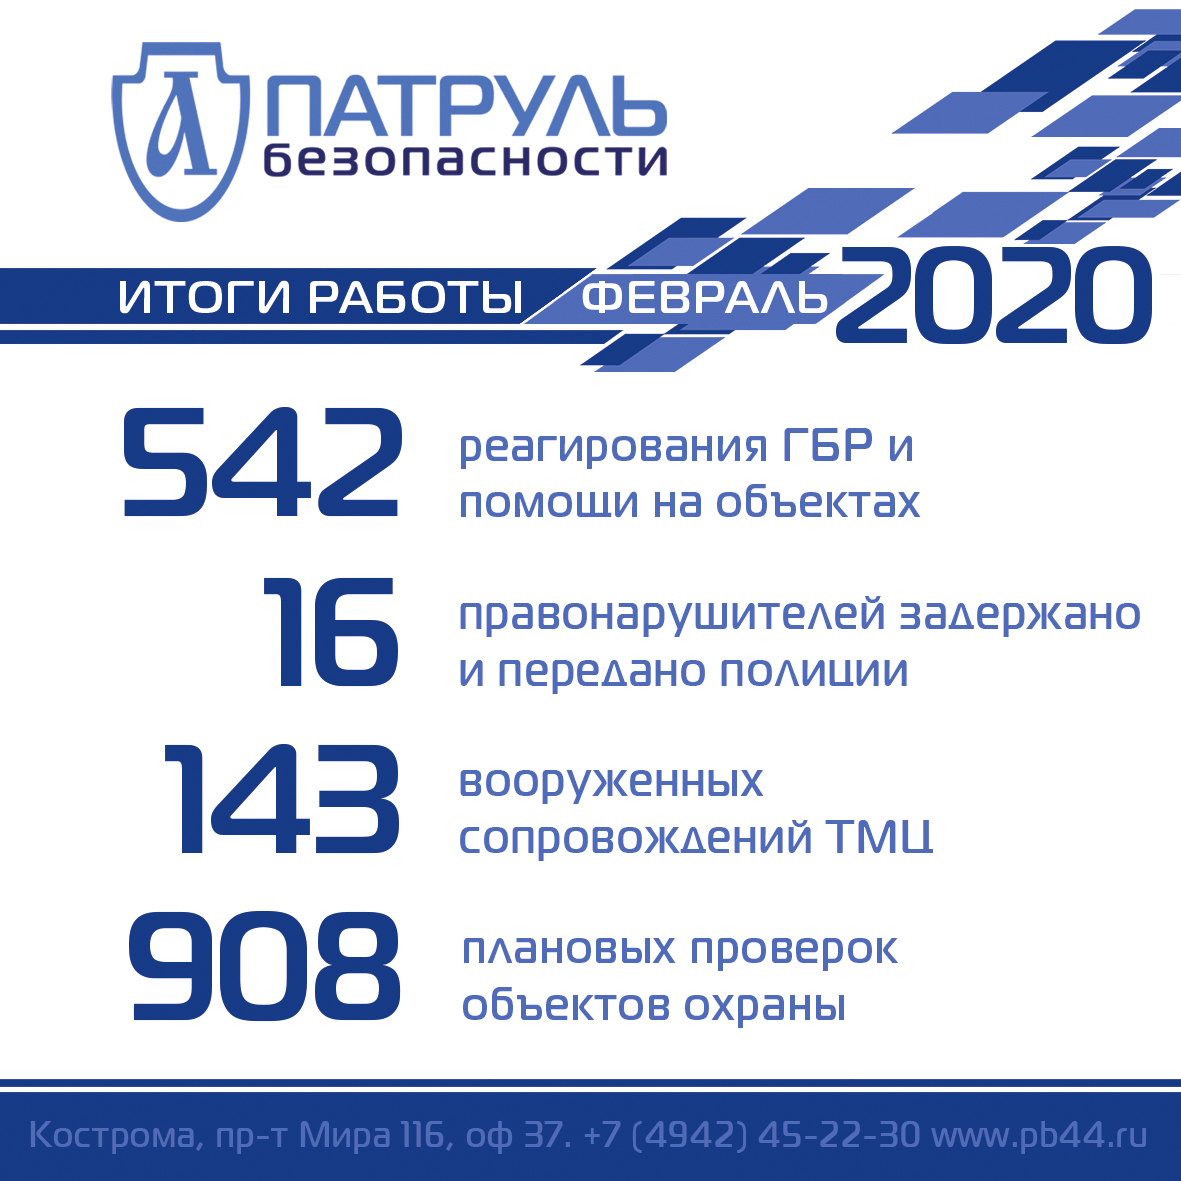 Итоги работы компании "Патруль Безопасности" в феврале 2020 года в сфере обеспечения безопасности в Костроме и Костромской области